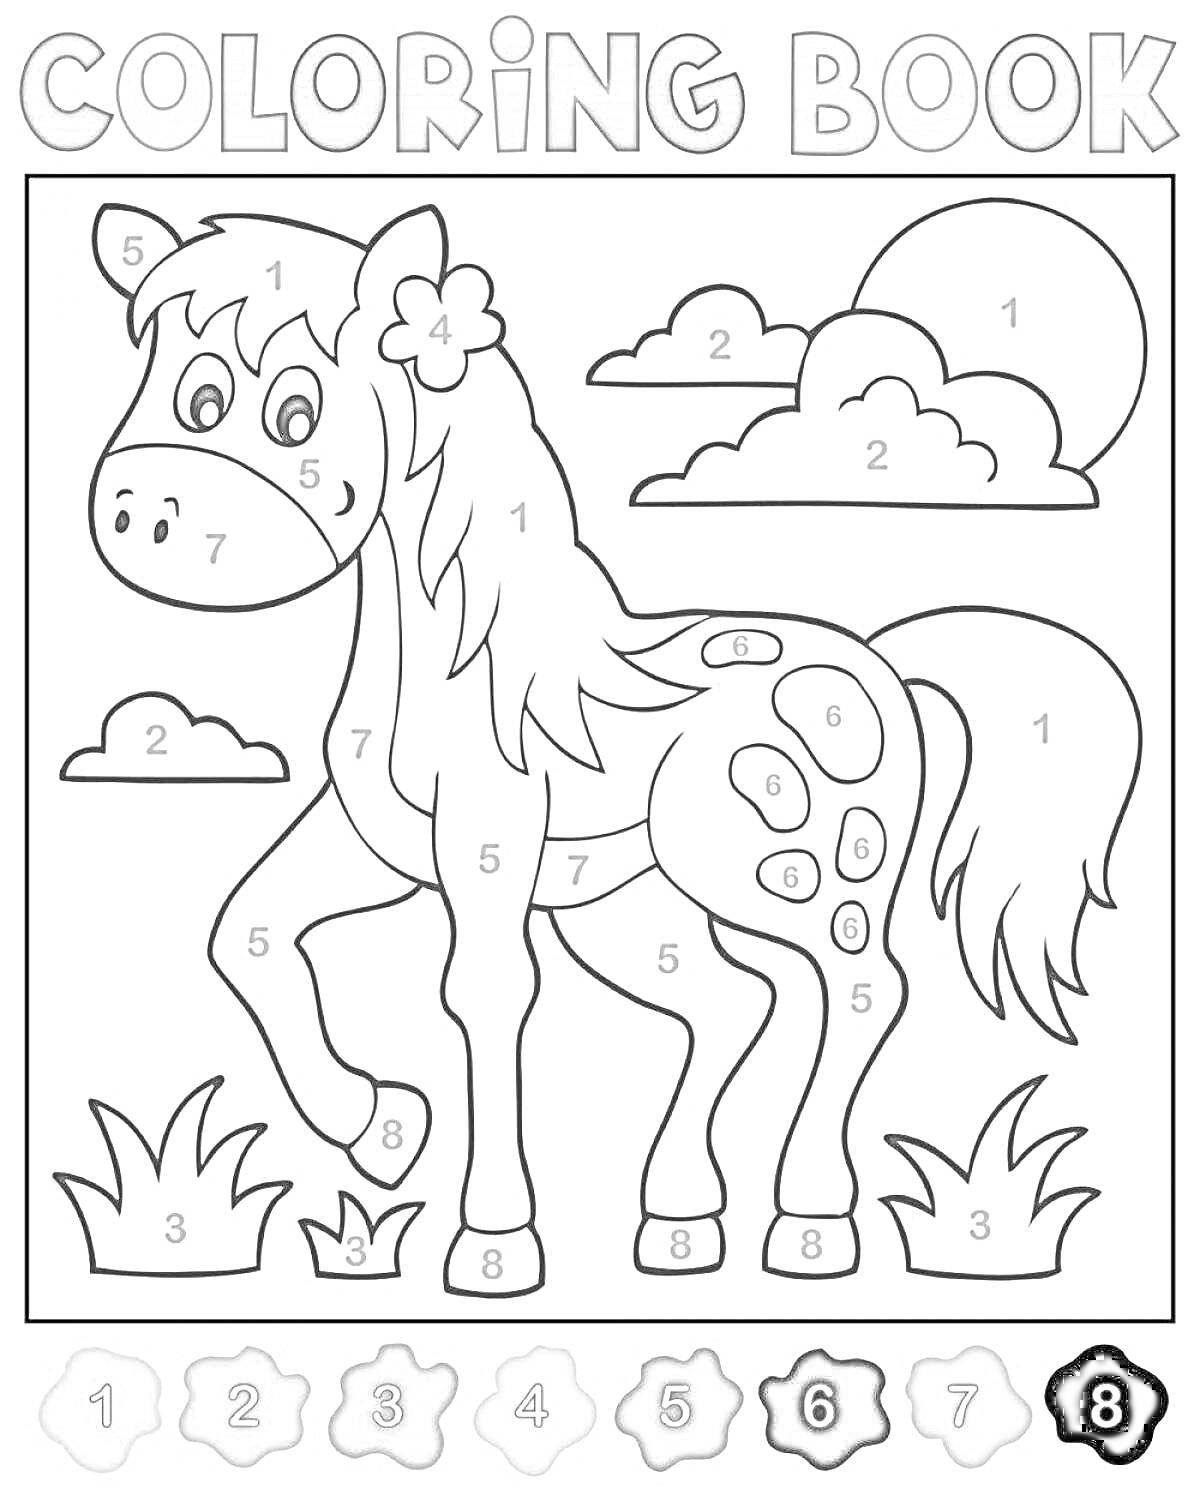 Раскраска лошадь с цветком на голове и облаками на фоне, в окружении травы, по номерам для раскрашивания